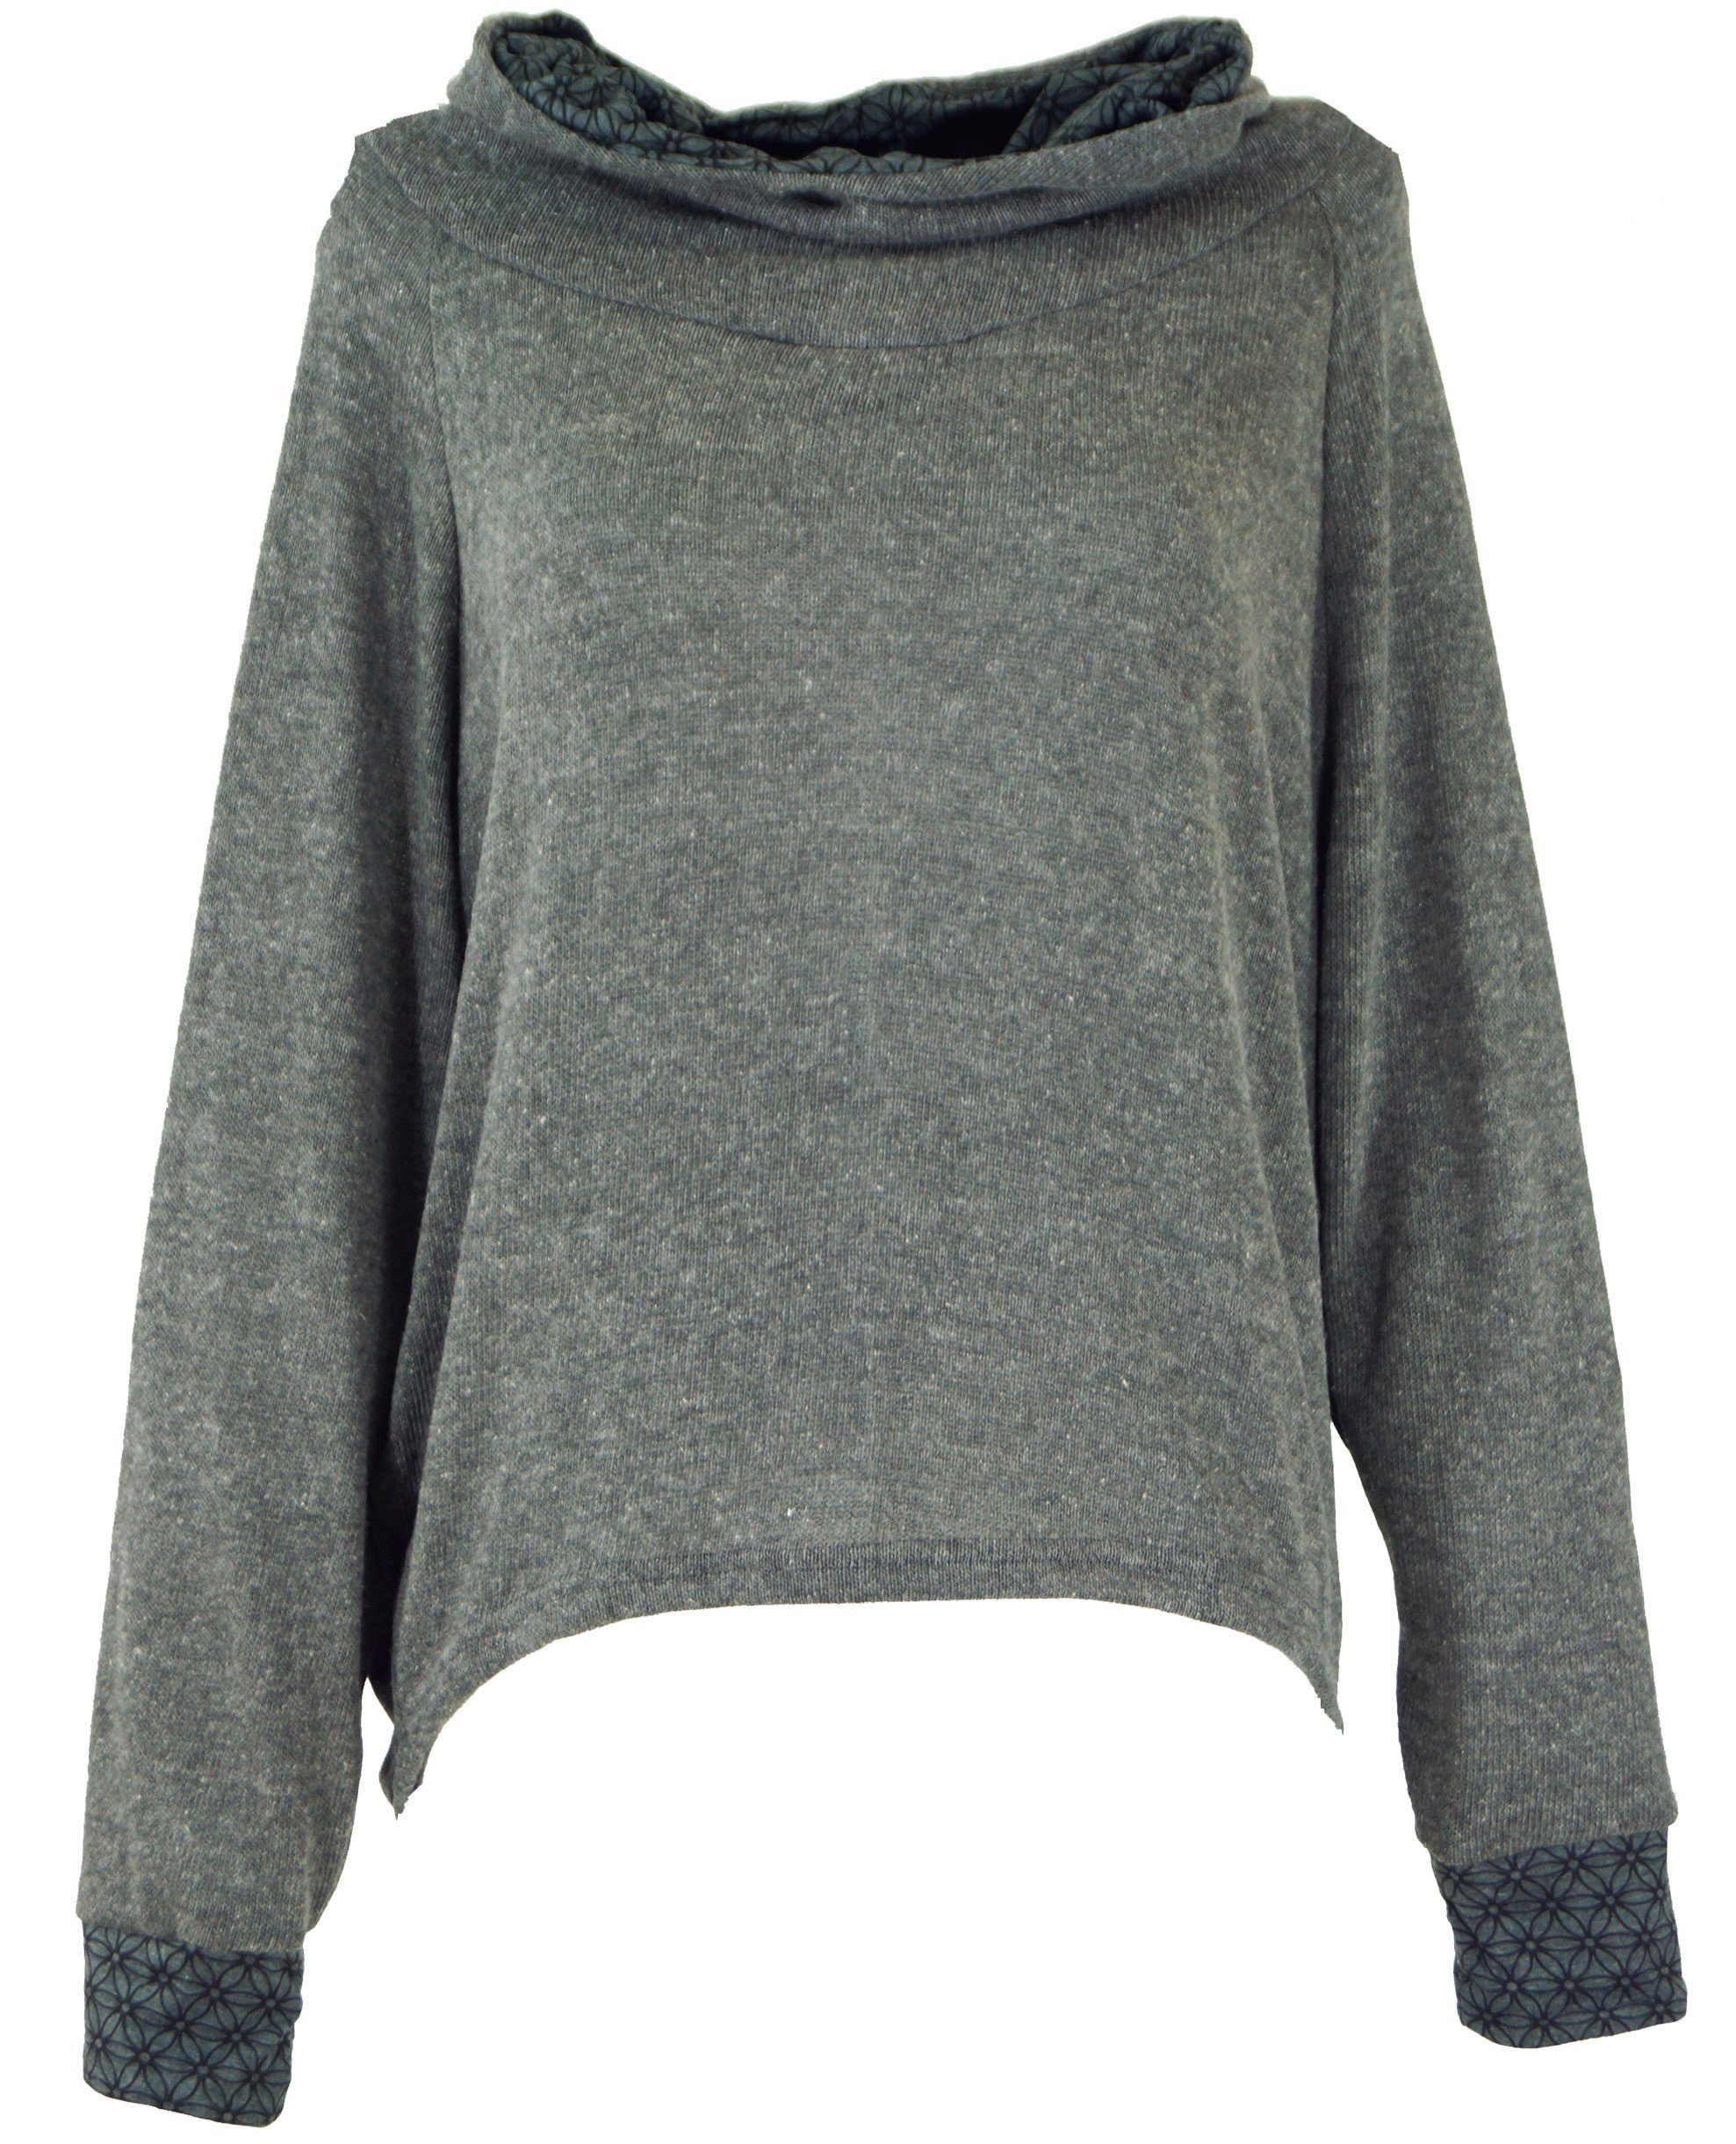 Bekleidung Kapuzenpullover Pullover, Guru-Shop alternative Sweatshirt, Longsleeve grau Hoody, -..